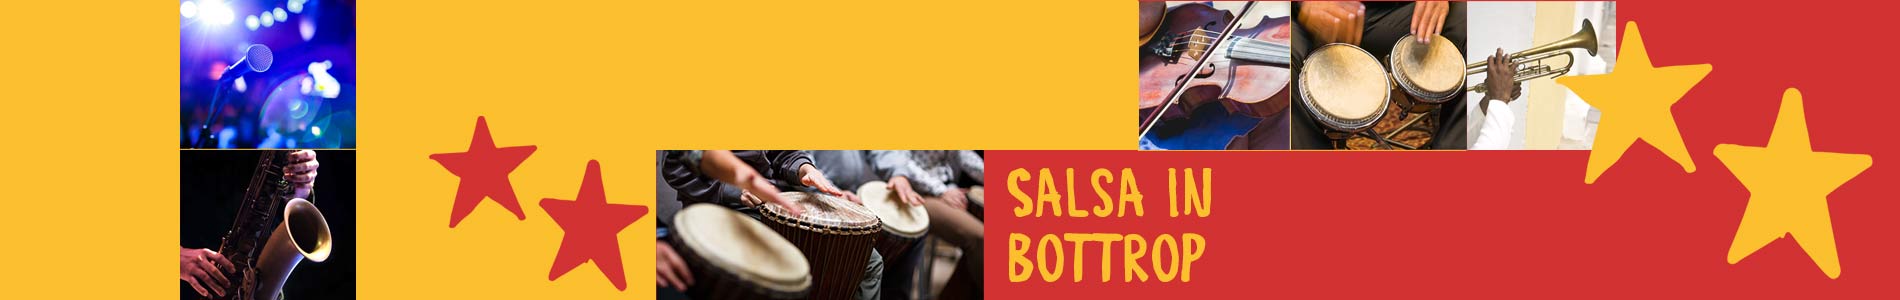 Salsa in Bottrop – Salsa lernen und tanzen, Tanzkurse, Partys, Veranstaltungen